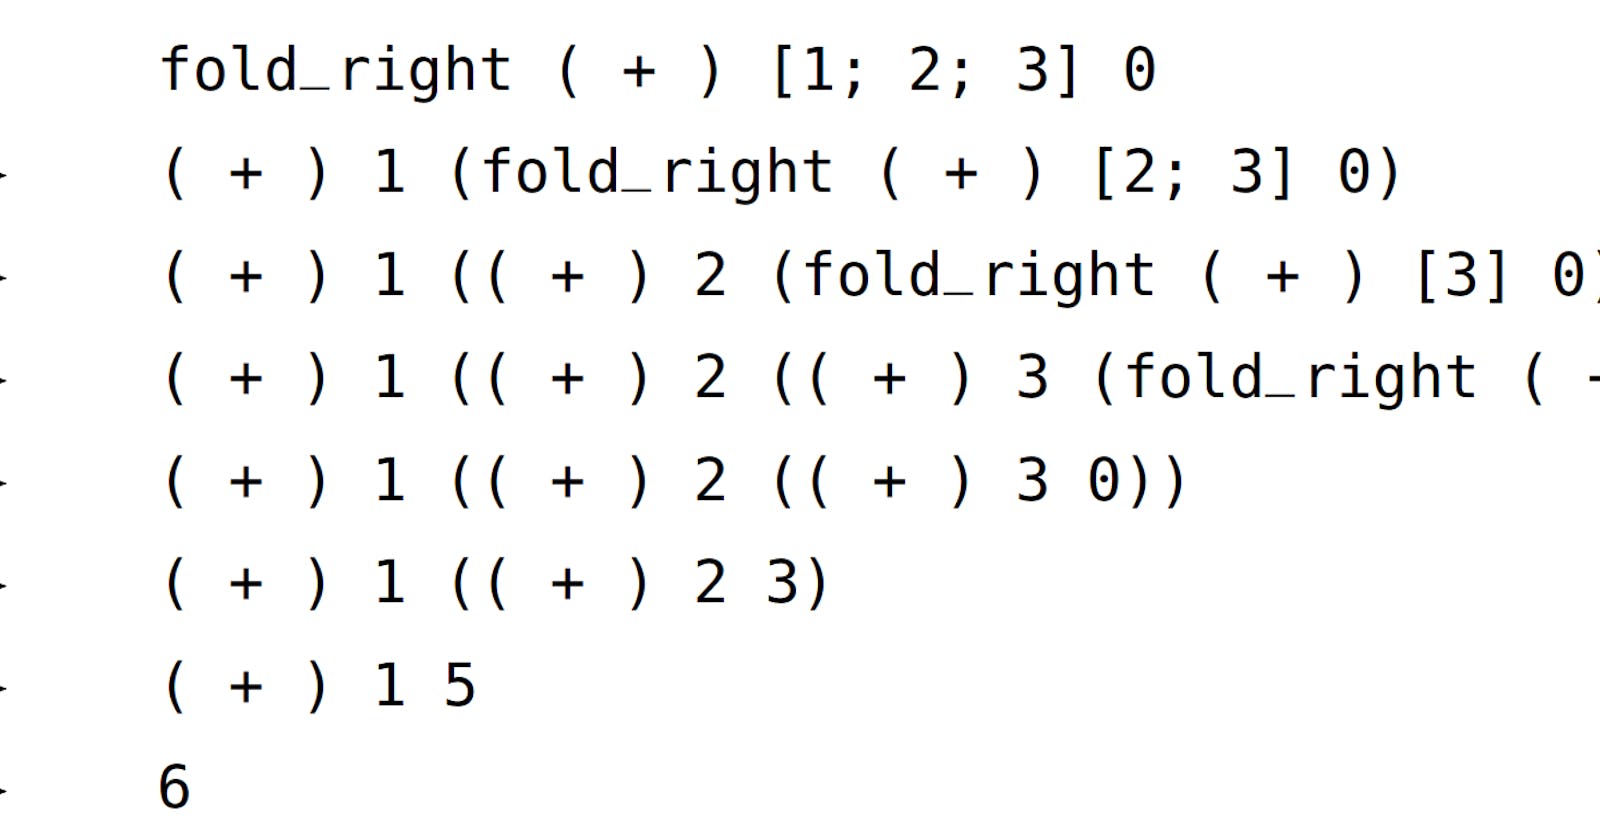 Folds in TypeScript